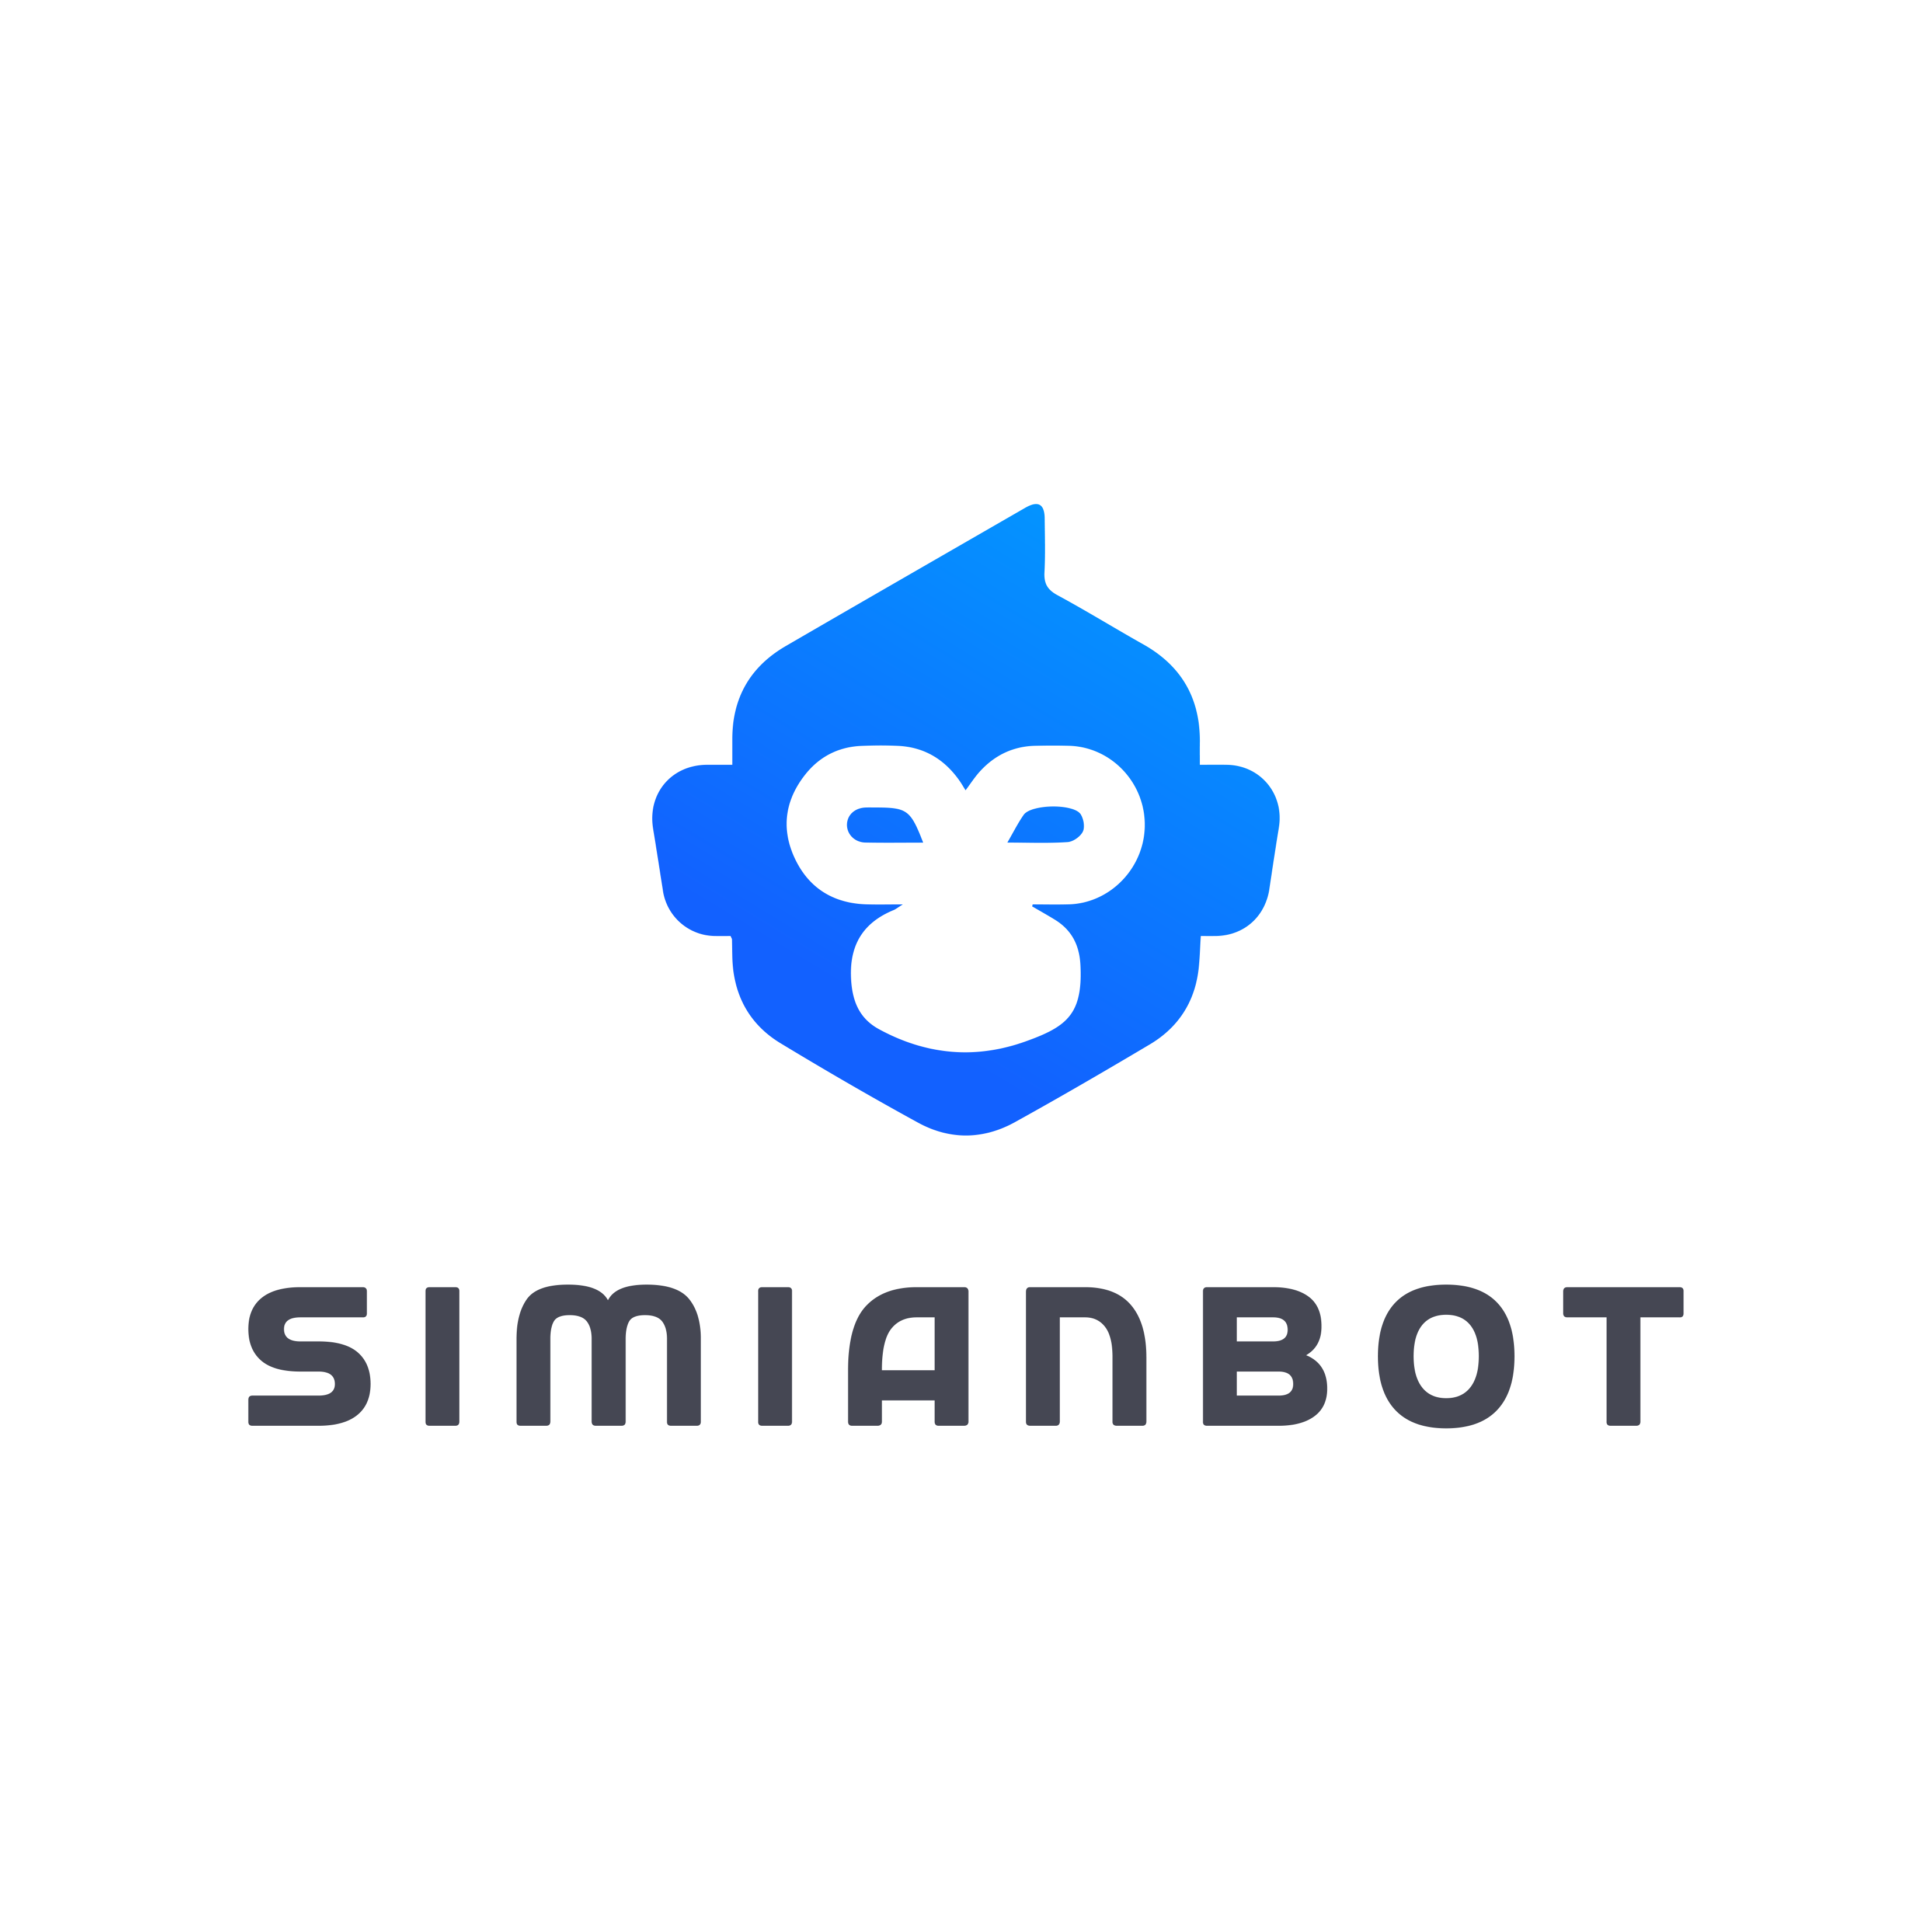 SimianBot